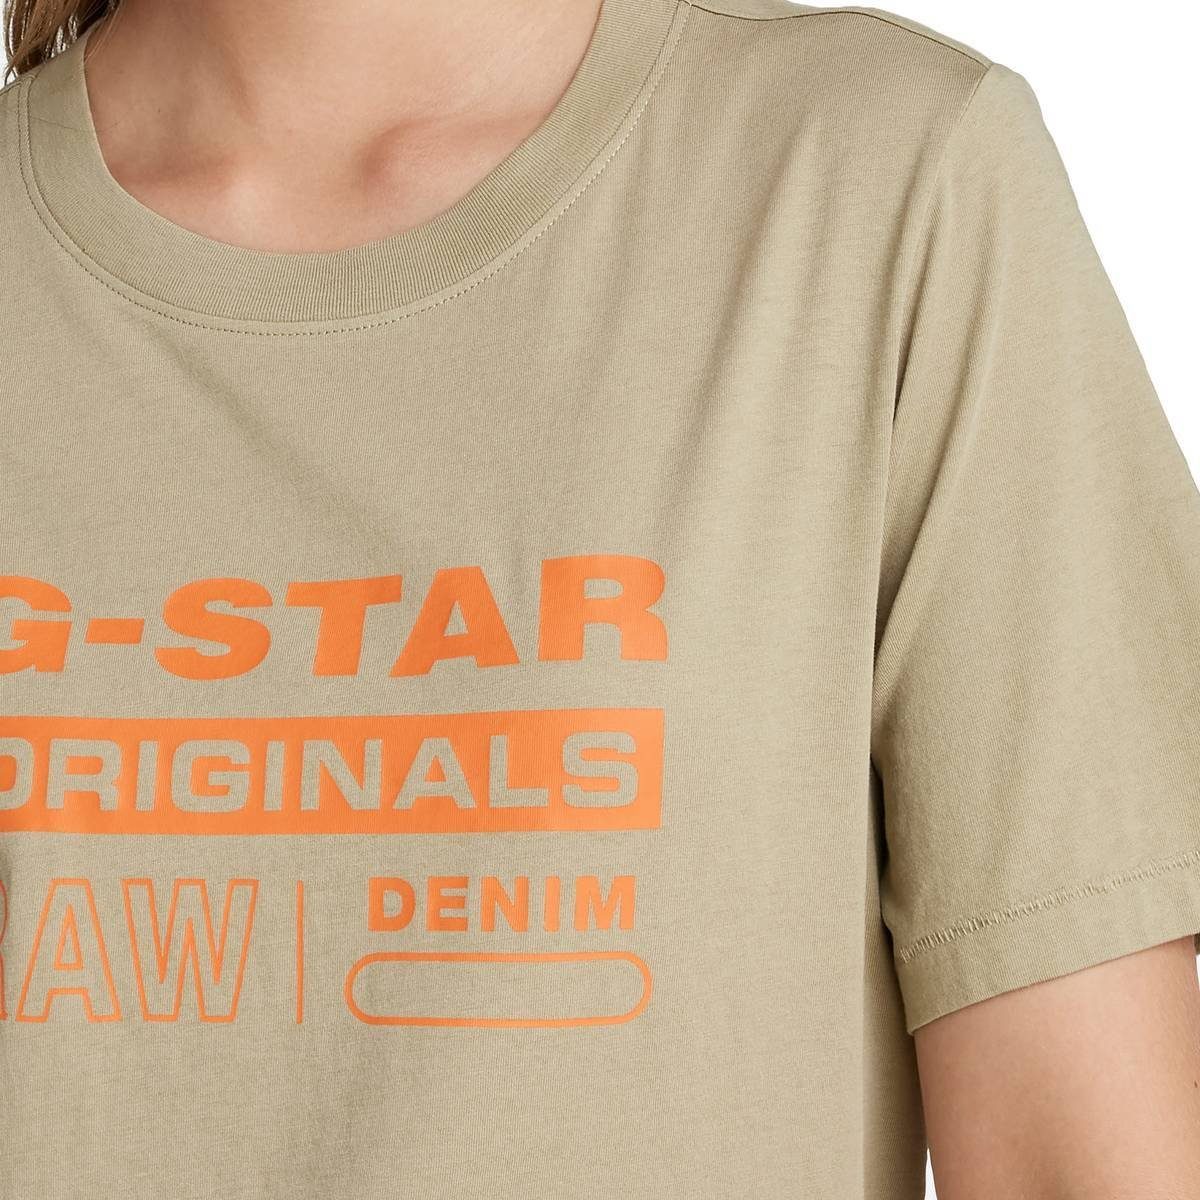 Originals Label T-Shirt G-Star Fit - Grün RAW (lt Moos) T-Shirt Damen Regular